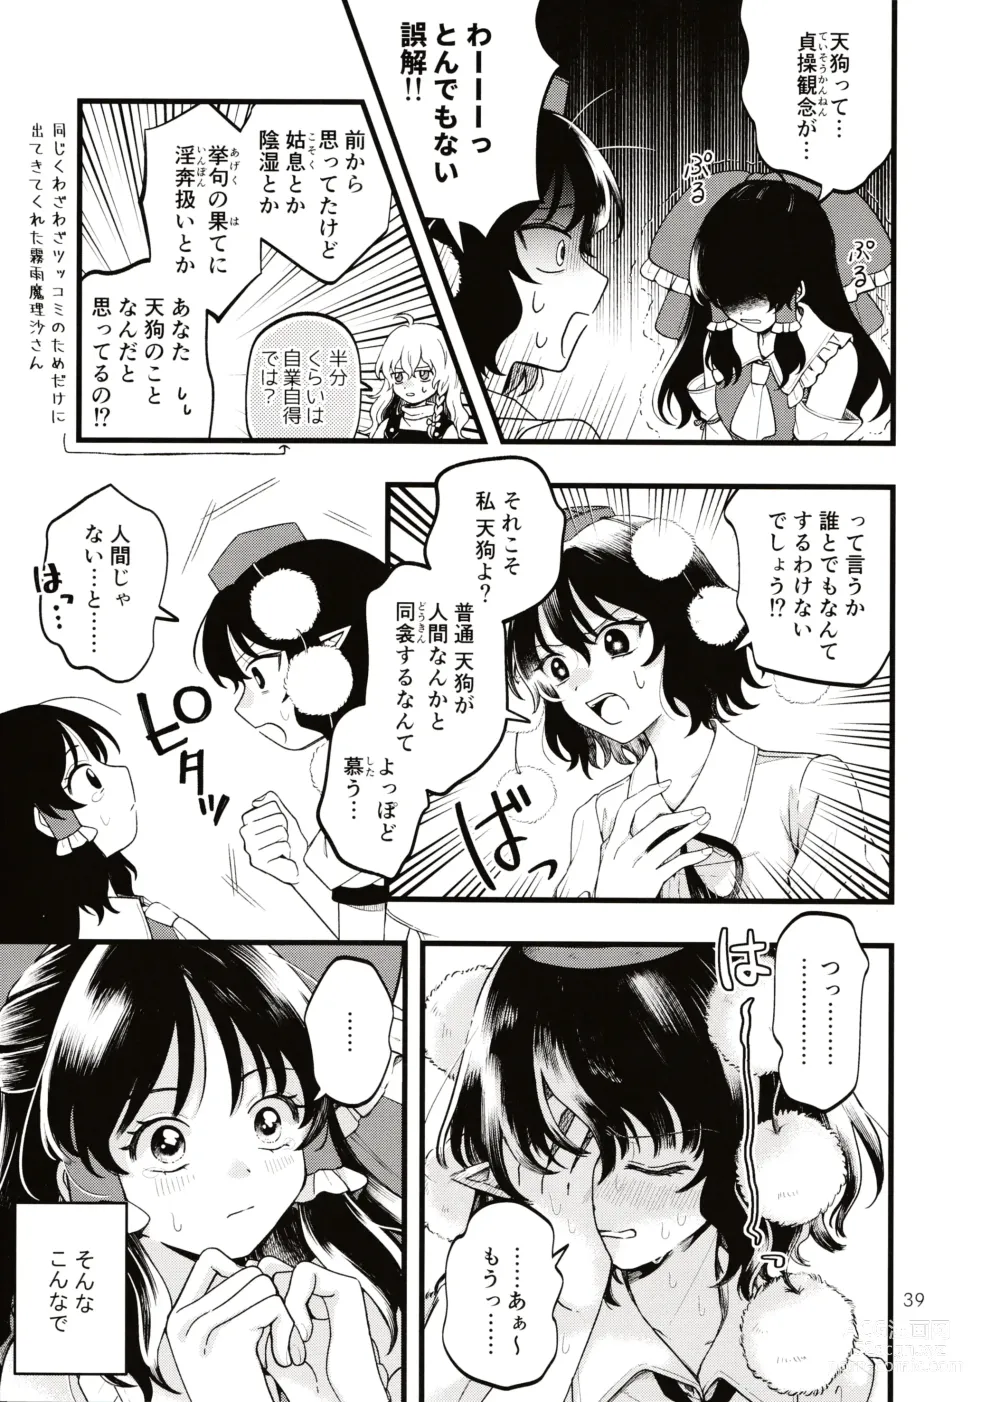 Page 38 of doujinshi Rubeus no Kankai